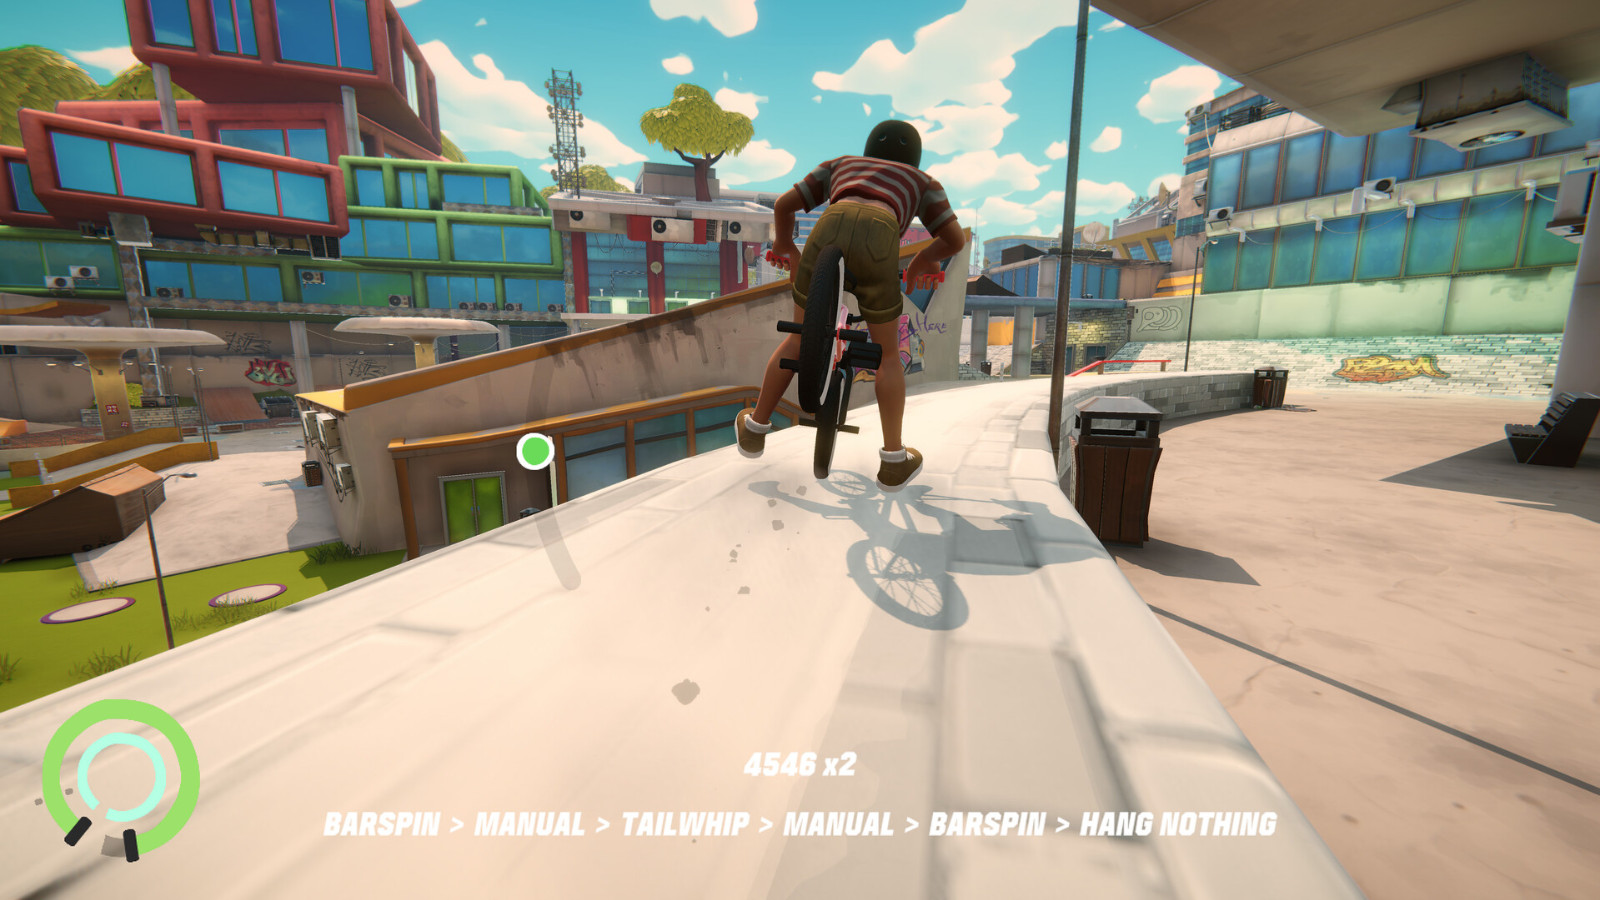 花样自行车模拟游戏《Streetdog BMX》Steam页面上线 发售日待定